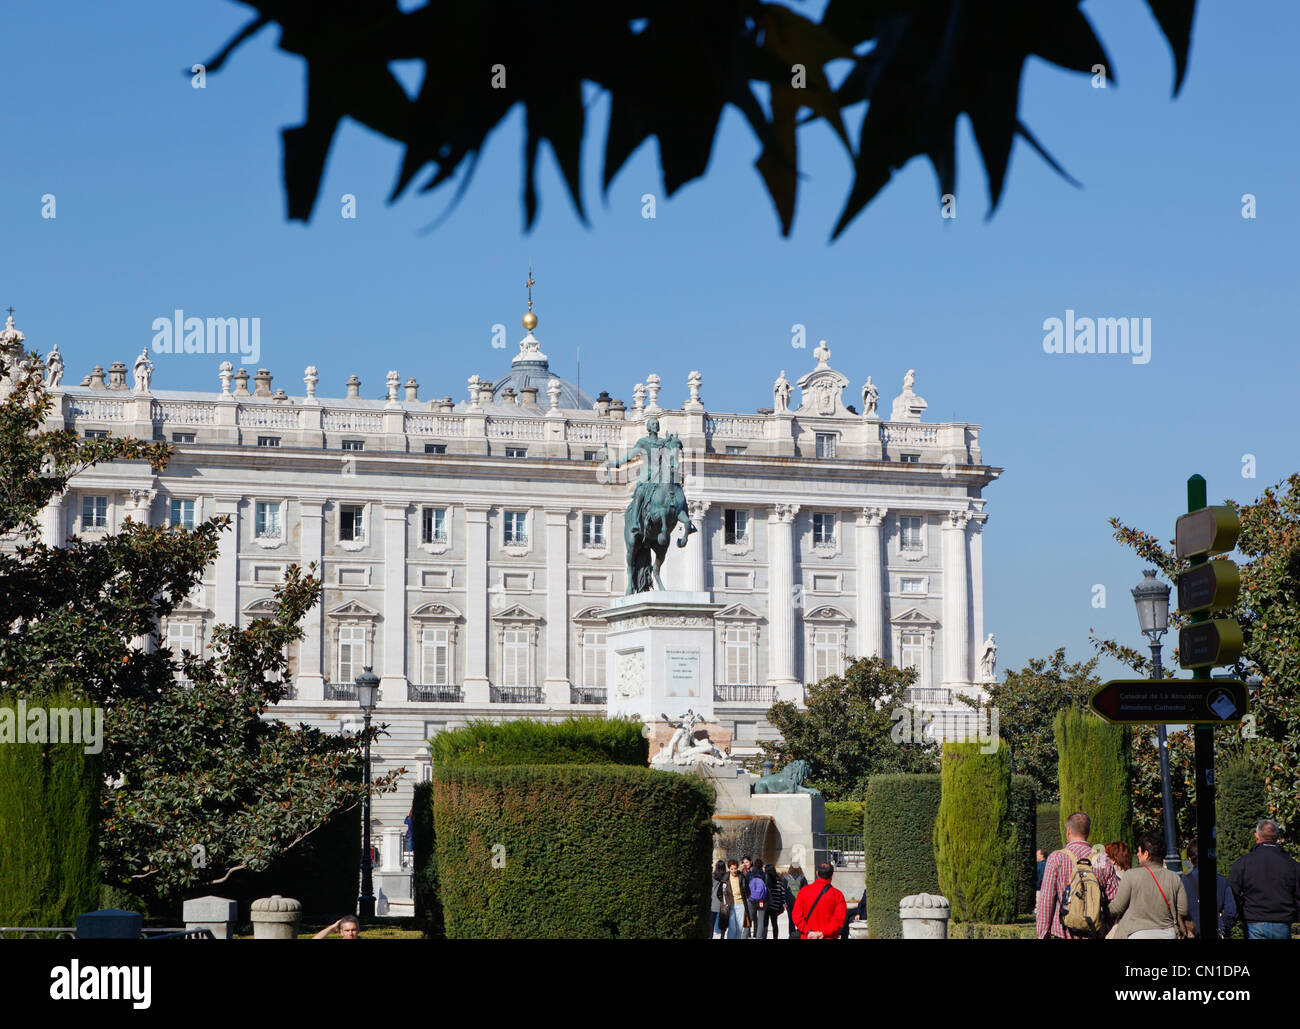 Madrid, Espagne. Plaza de Oriente avec le Palacio Real, le Palais Royal ou l'arrière-plan. Statue équestre de Philippe IV par Pietro Tacca. Banque D'Images